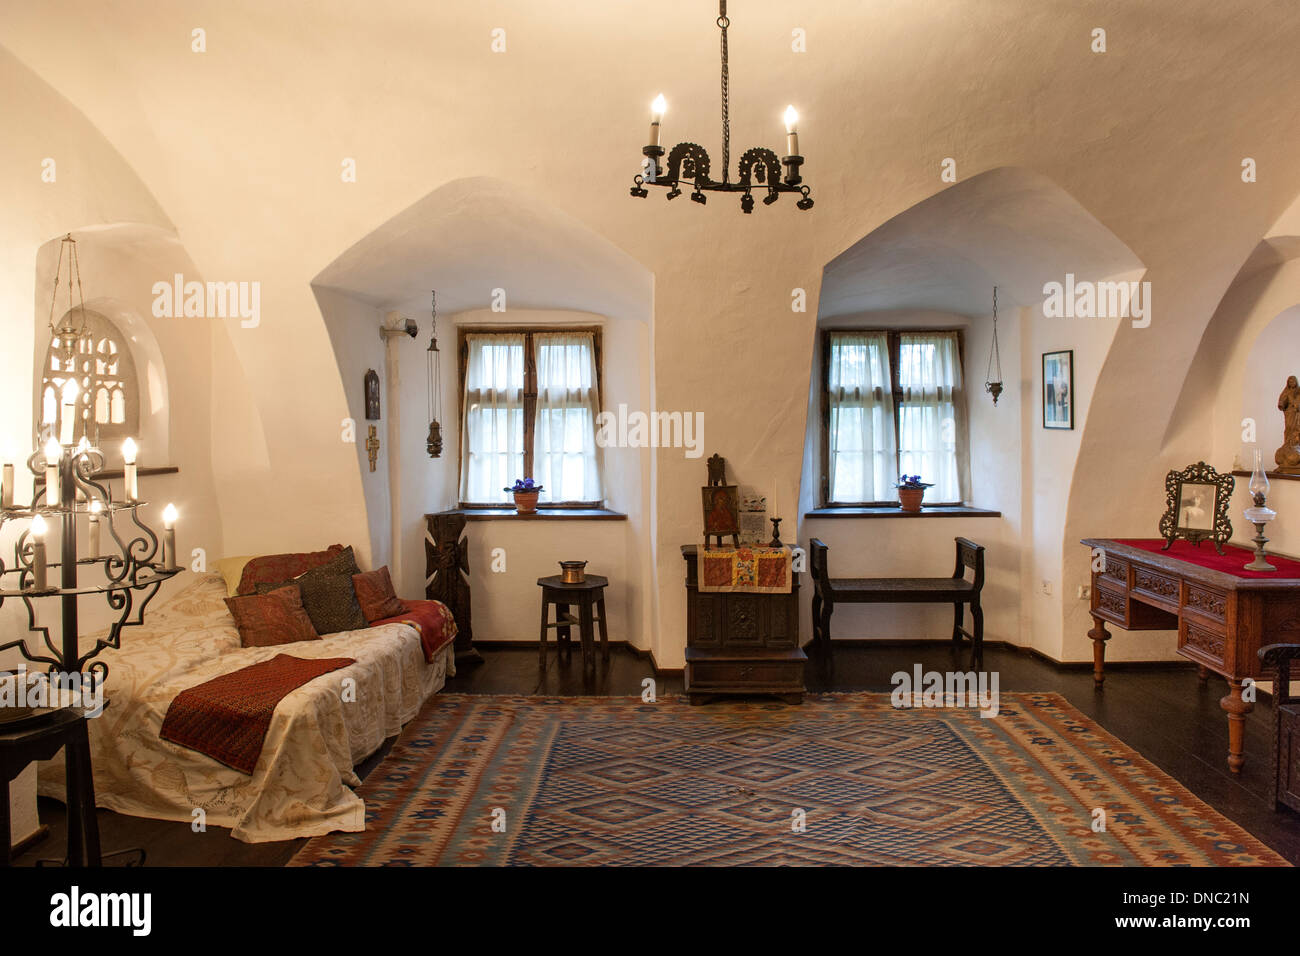 Interior of Bran Castle in the Transylvania region of central Romania. Stock Photo